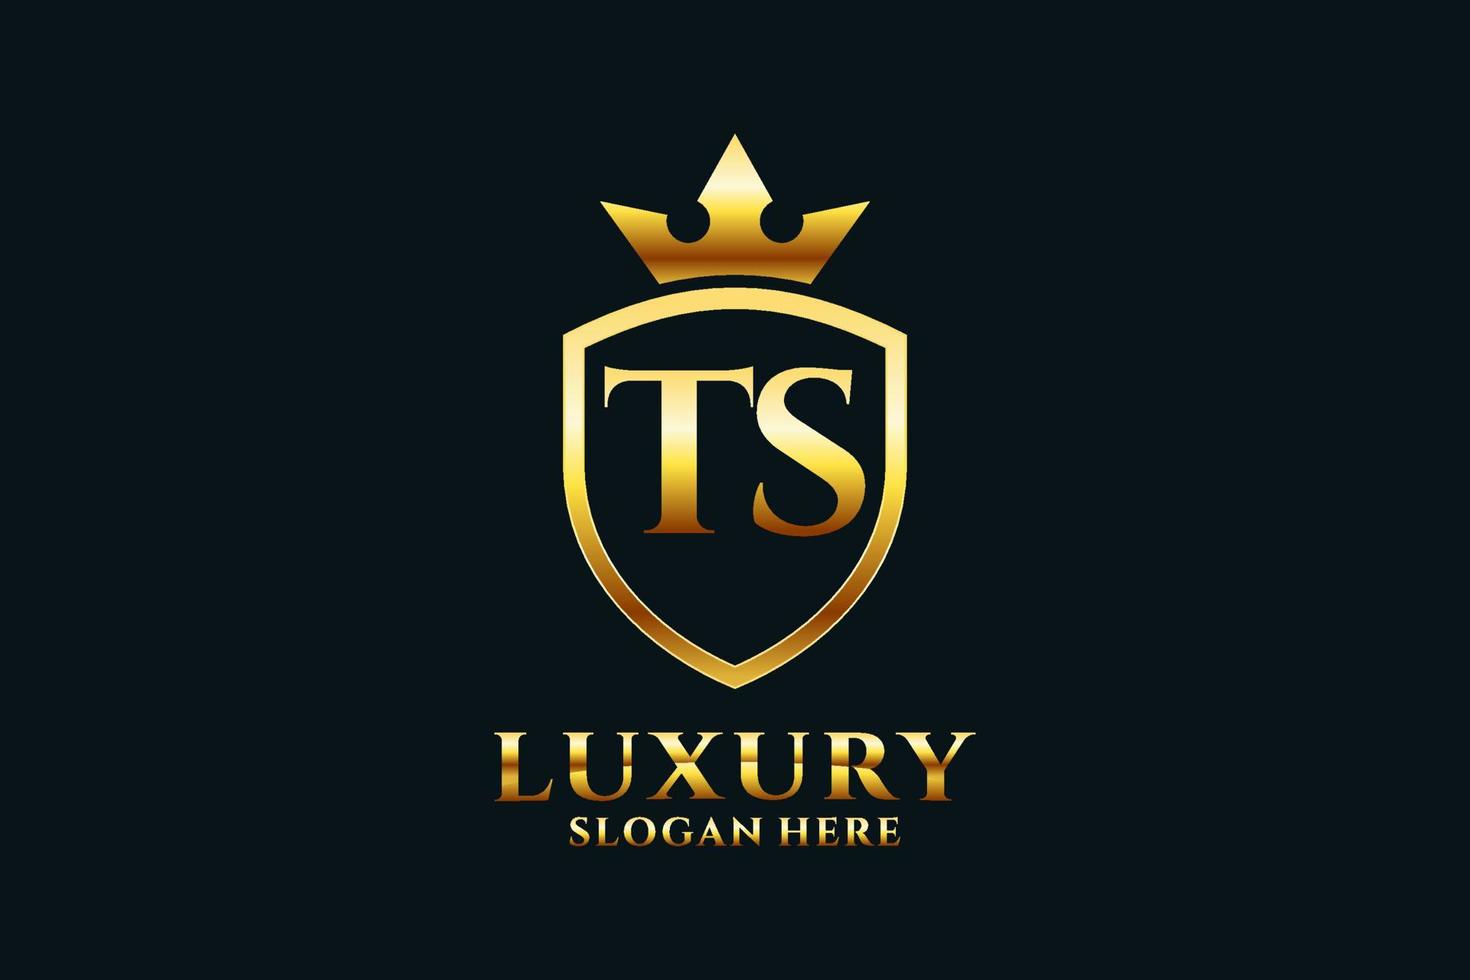 logo monogramme de luxe élégant initial ts ou modèle de badge avec volutes et couronne royale - parfait pour les projets de marque de luxe vecteur